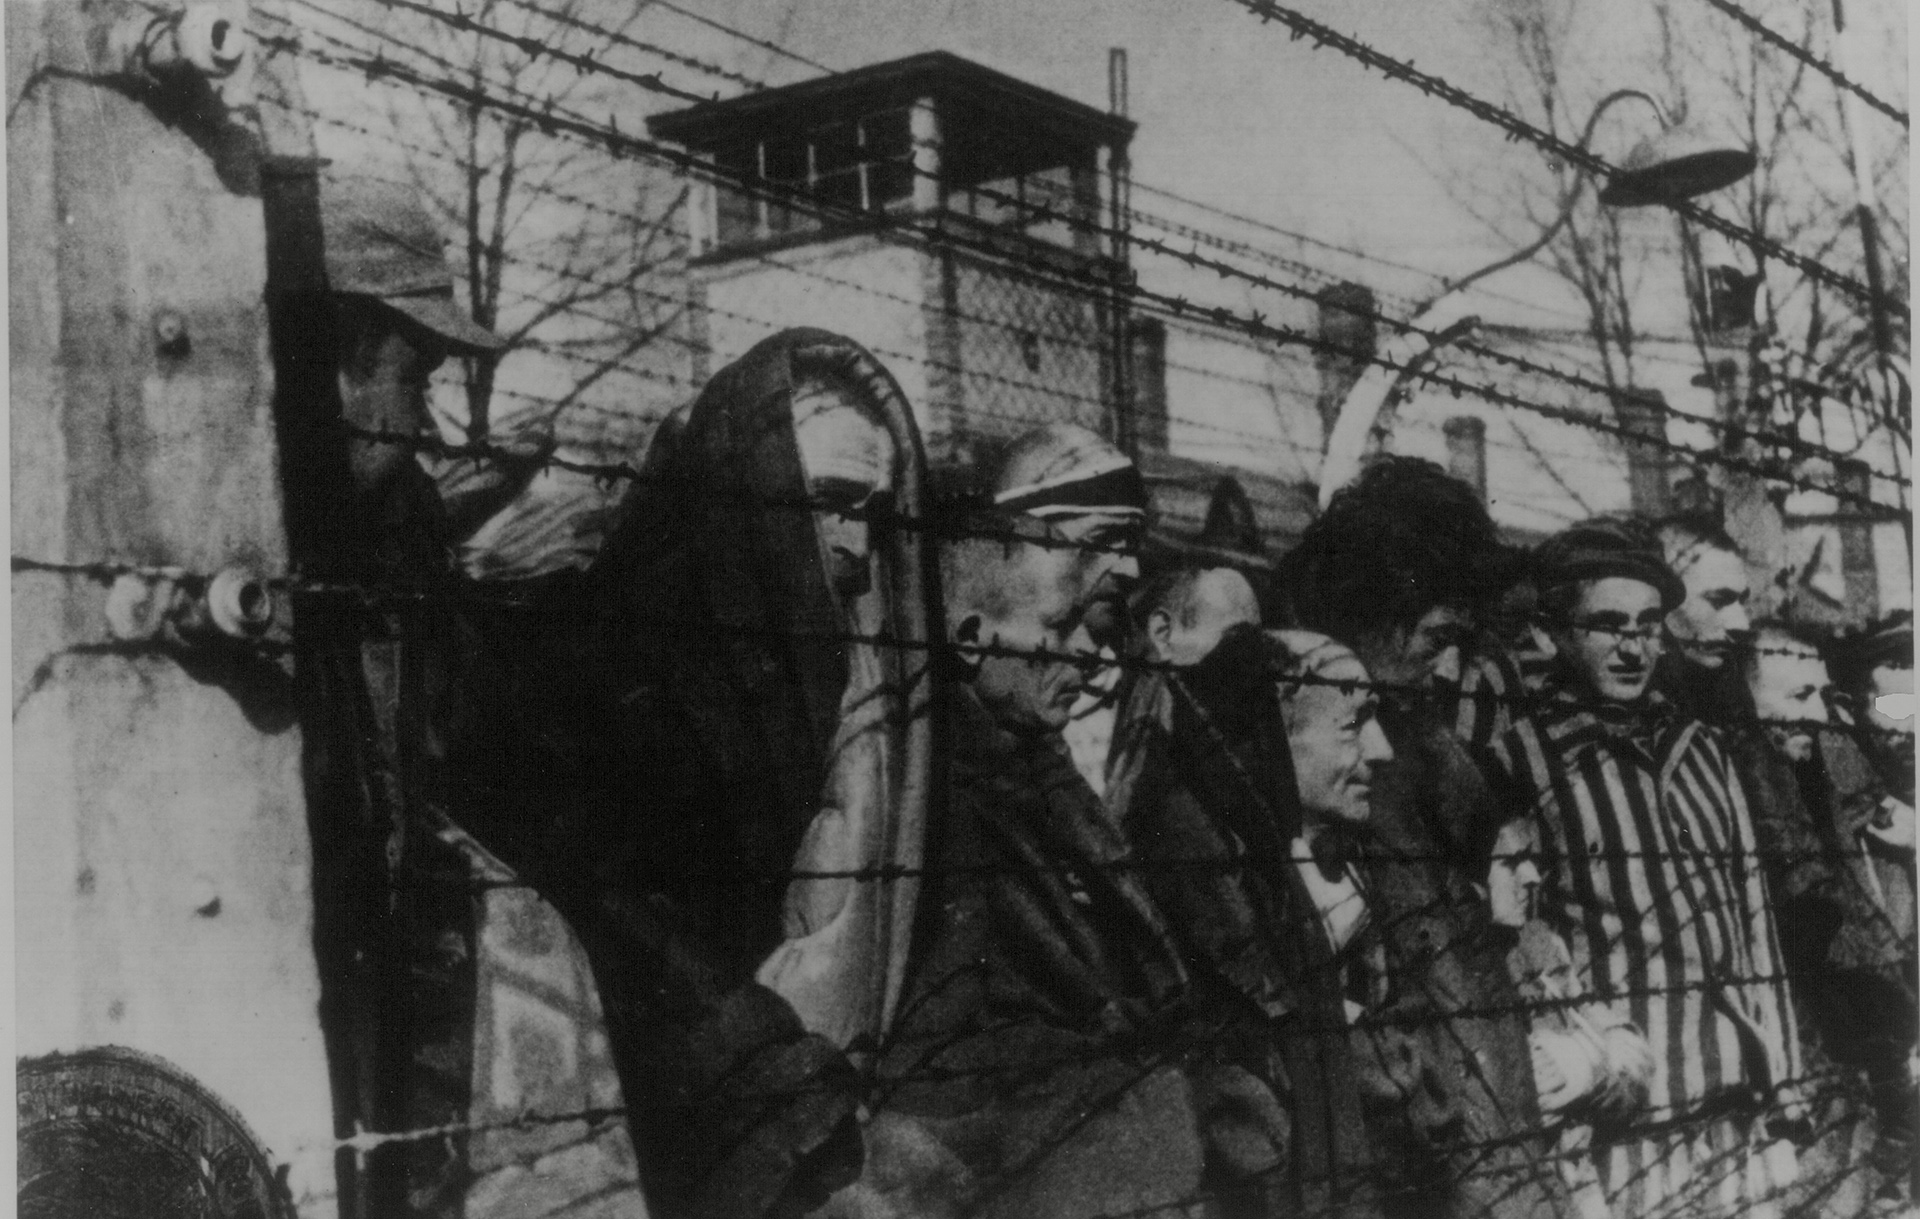 Las atrocidades en Auschwitz en esta imagen de los prisioneros frente a un alambre electrificado en el campo de exterminio (Northcliffe Collection/ANL/Shutterstock)
